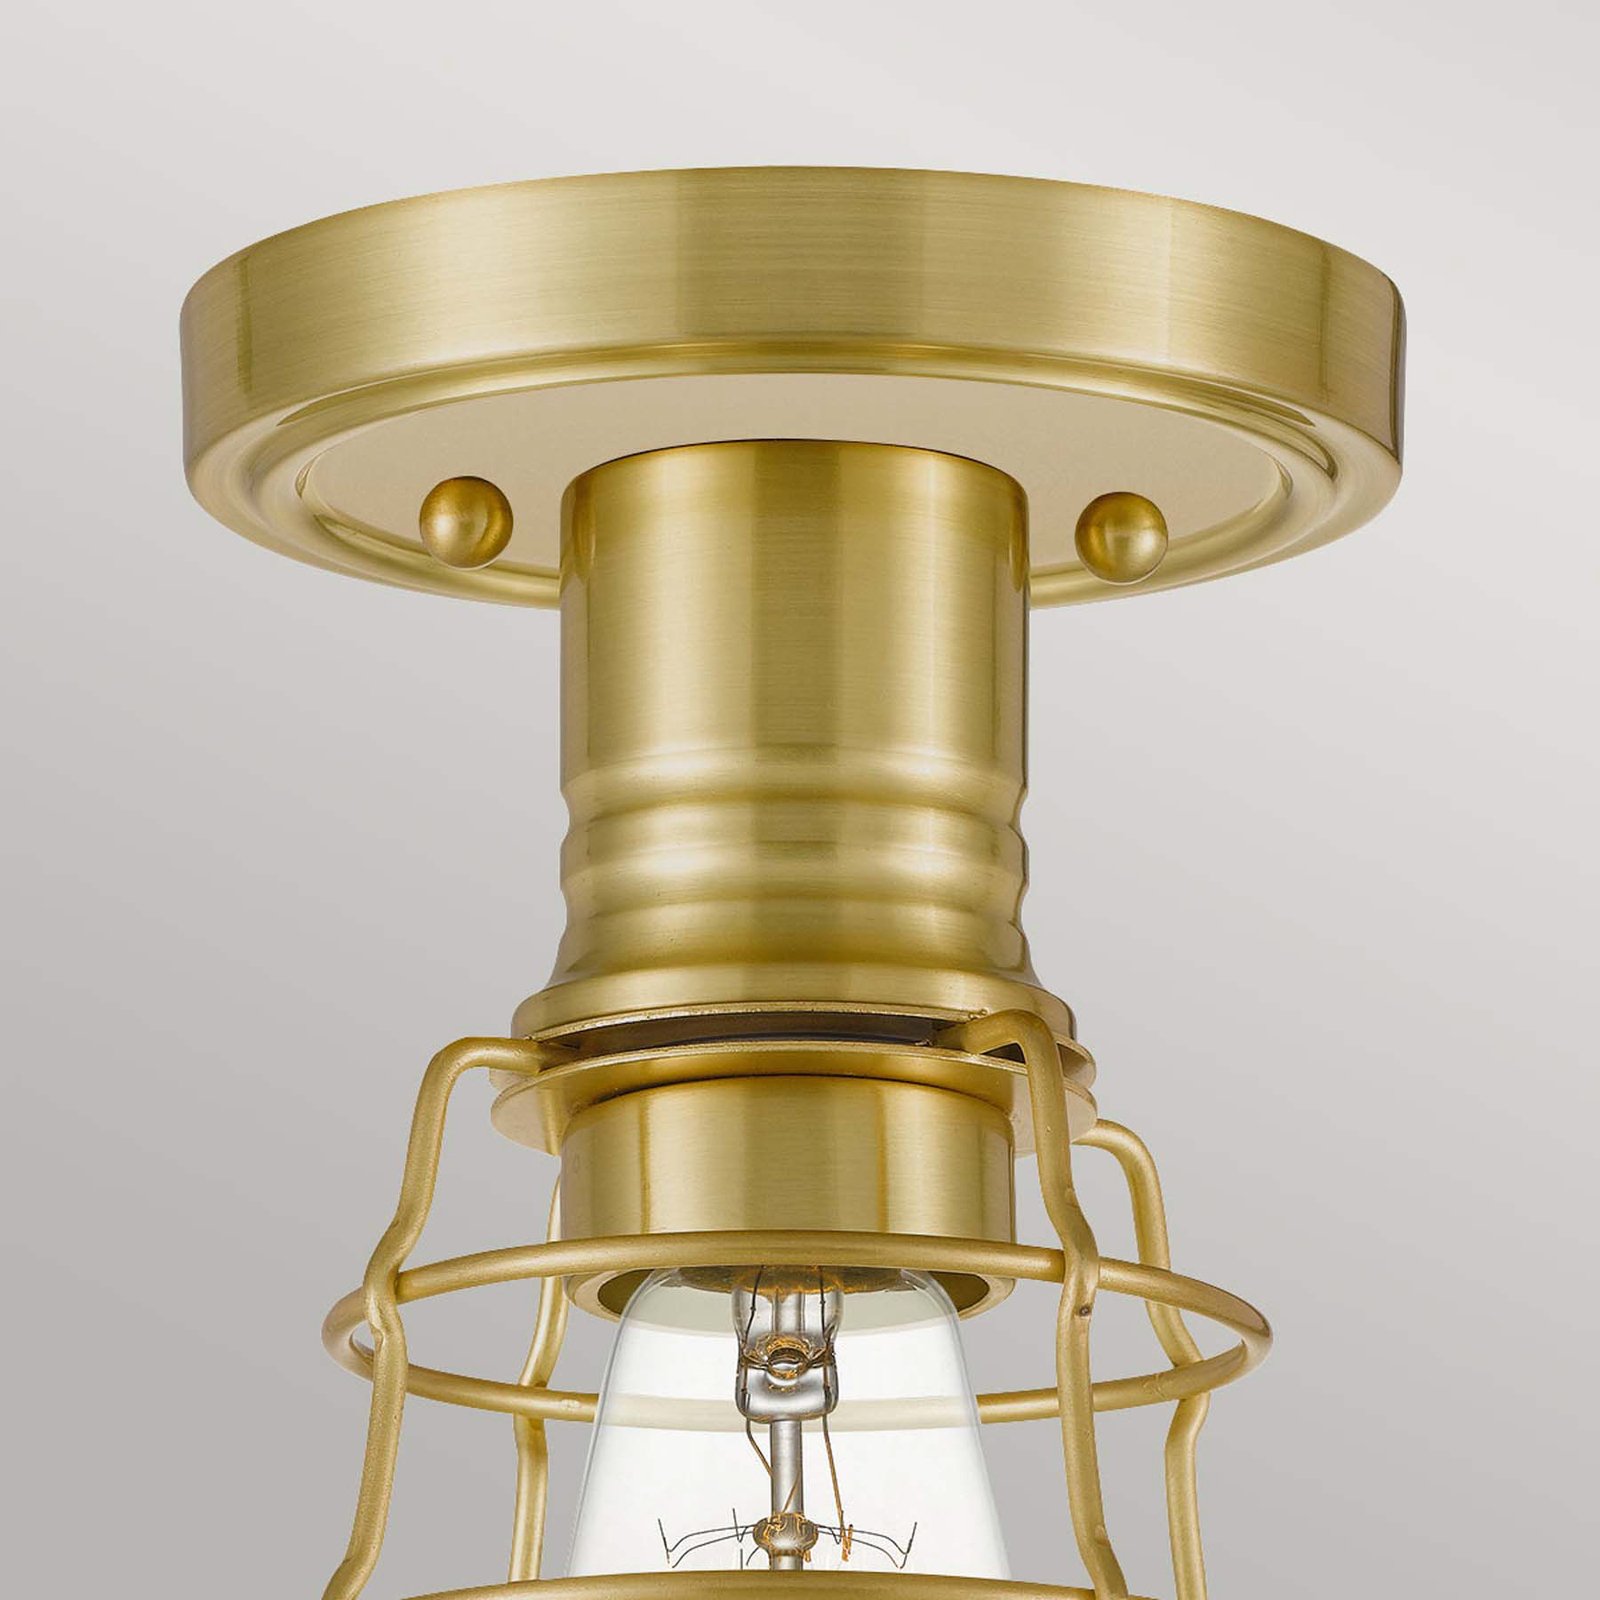 Stropna svetilka Mixon s kovinsko kletko, brušena medenina